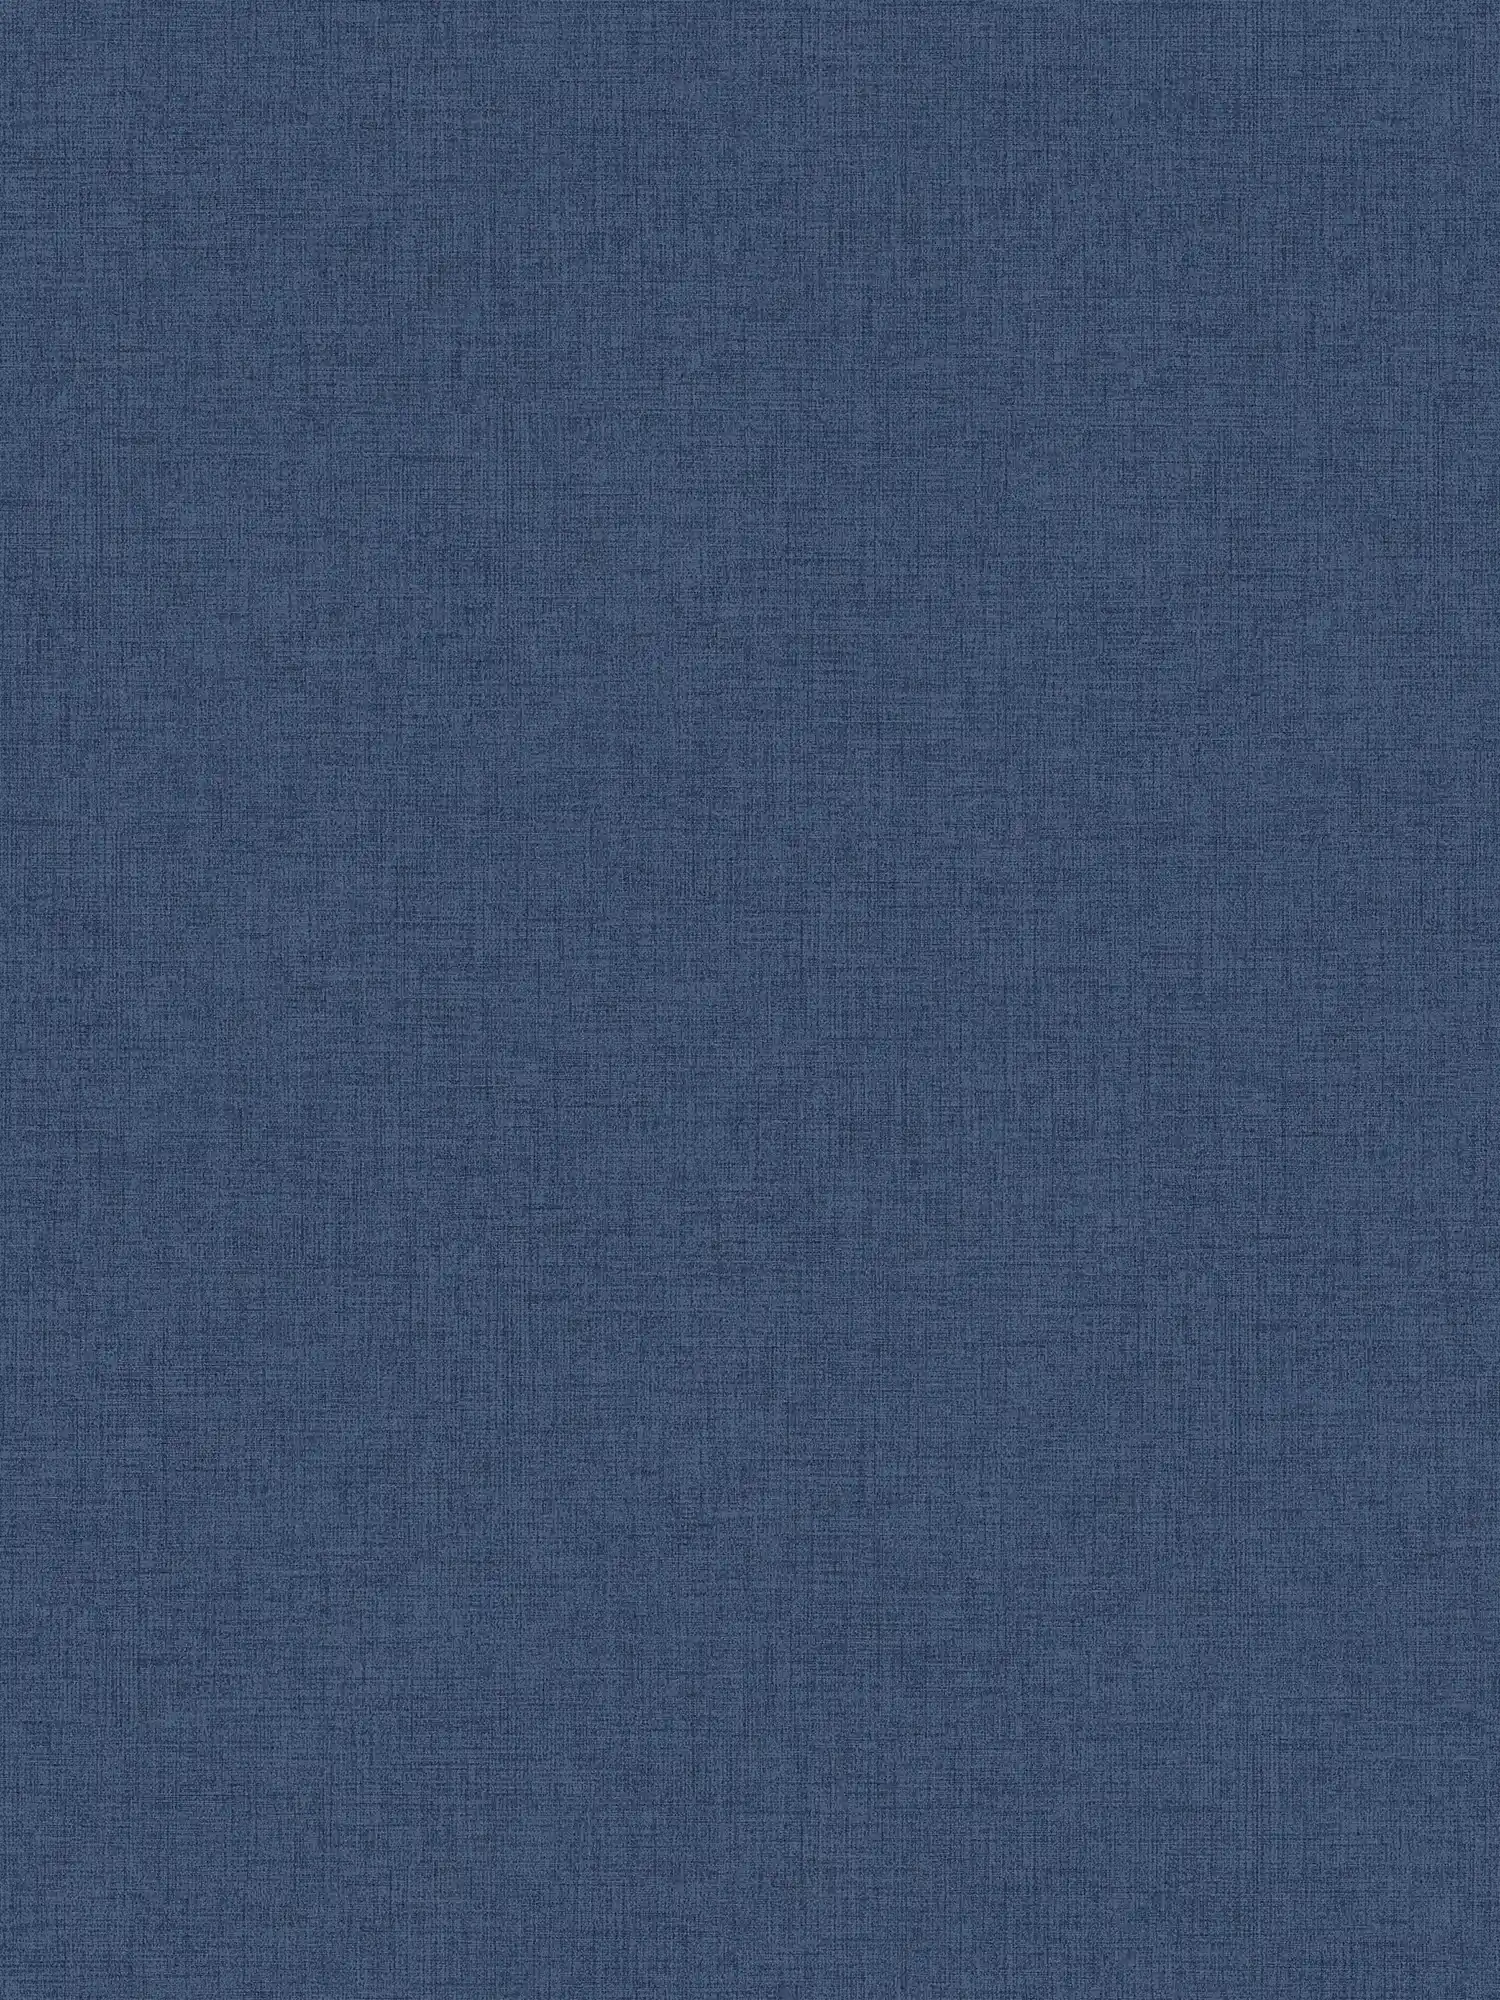 Papel pintado azul marino con aspecto de lino, Azul marino - Azul
